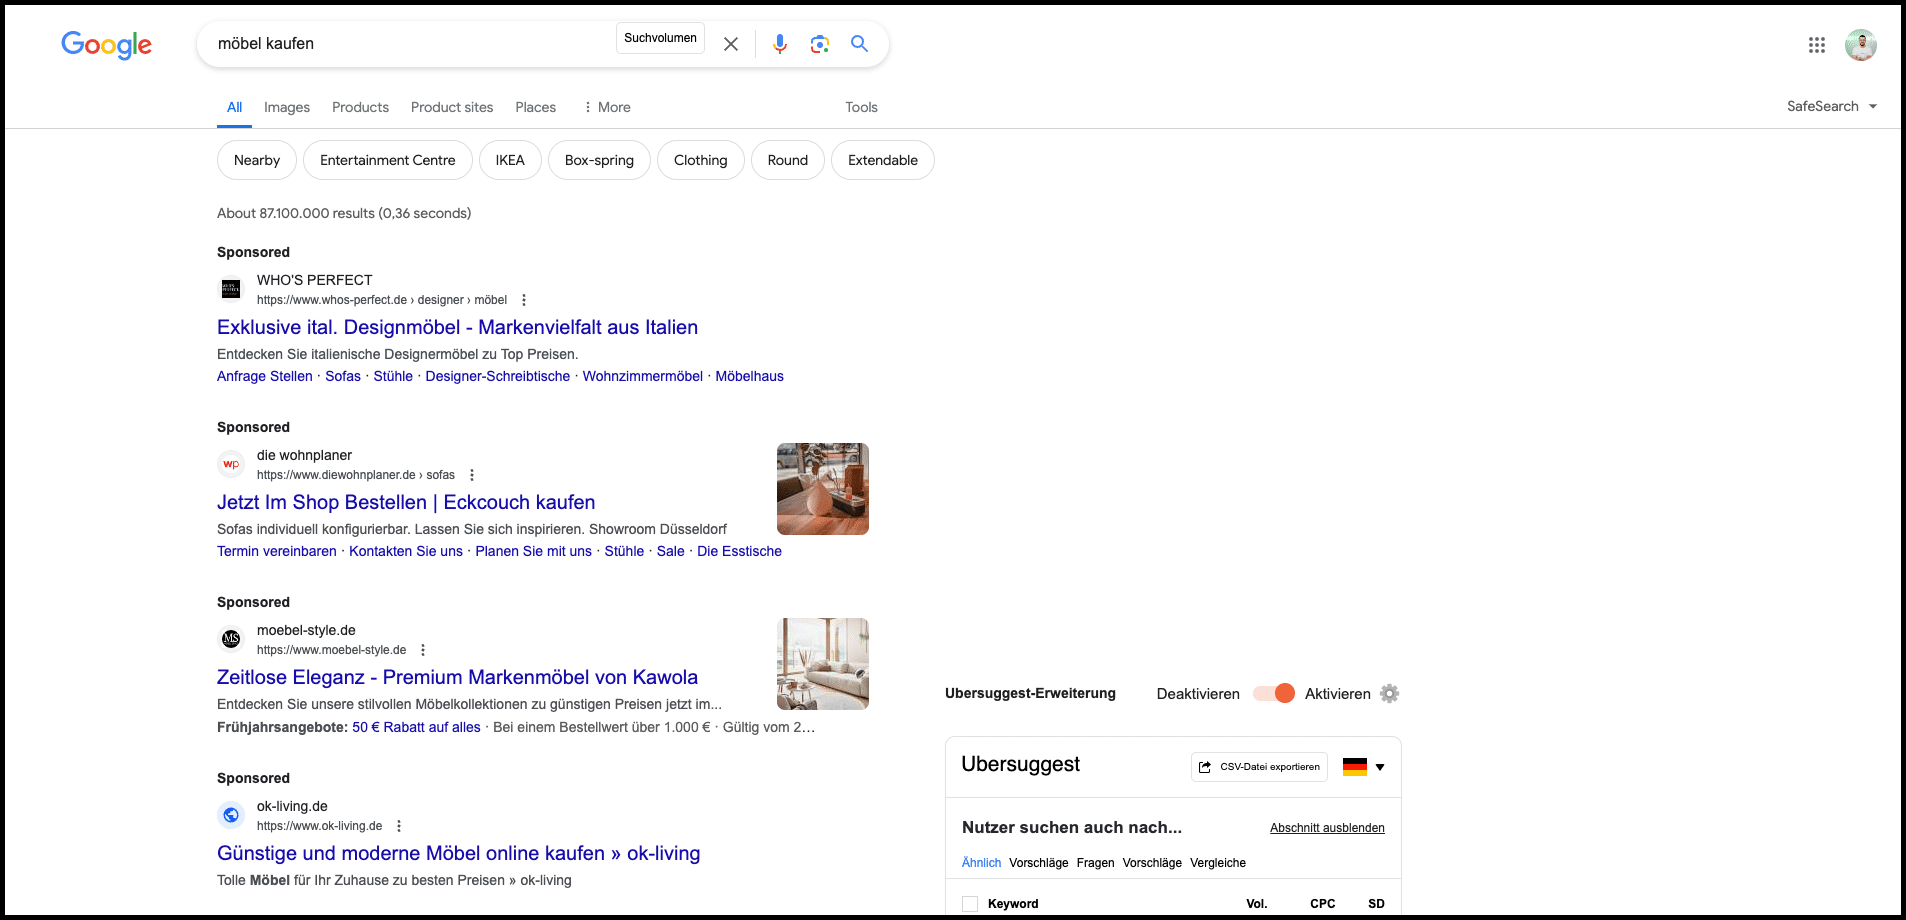 Google-Suchergebnisseite für Möbelkauf mit gesponserten Anzeigen und einer Ubersuggest-Erweiterungsleiste unten auf der Seite.